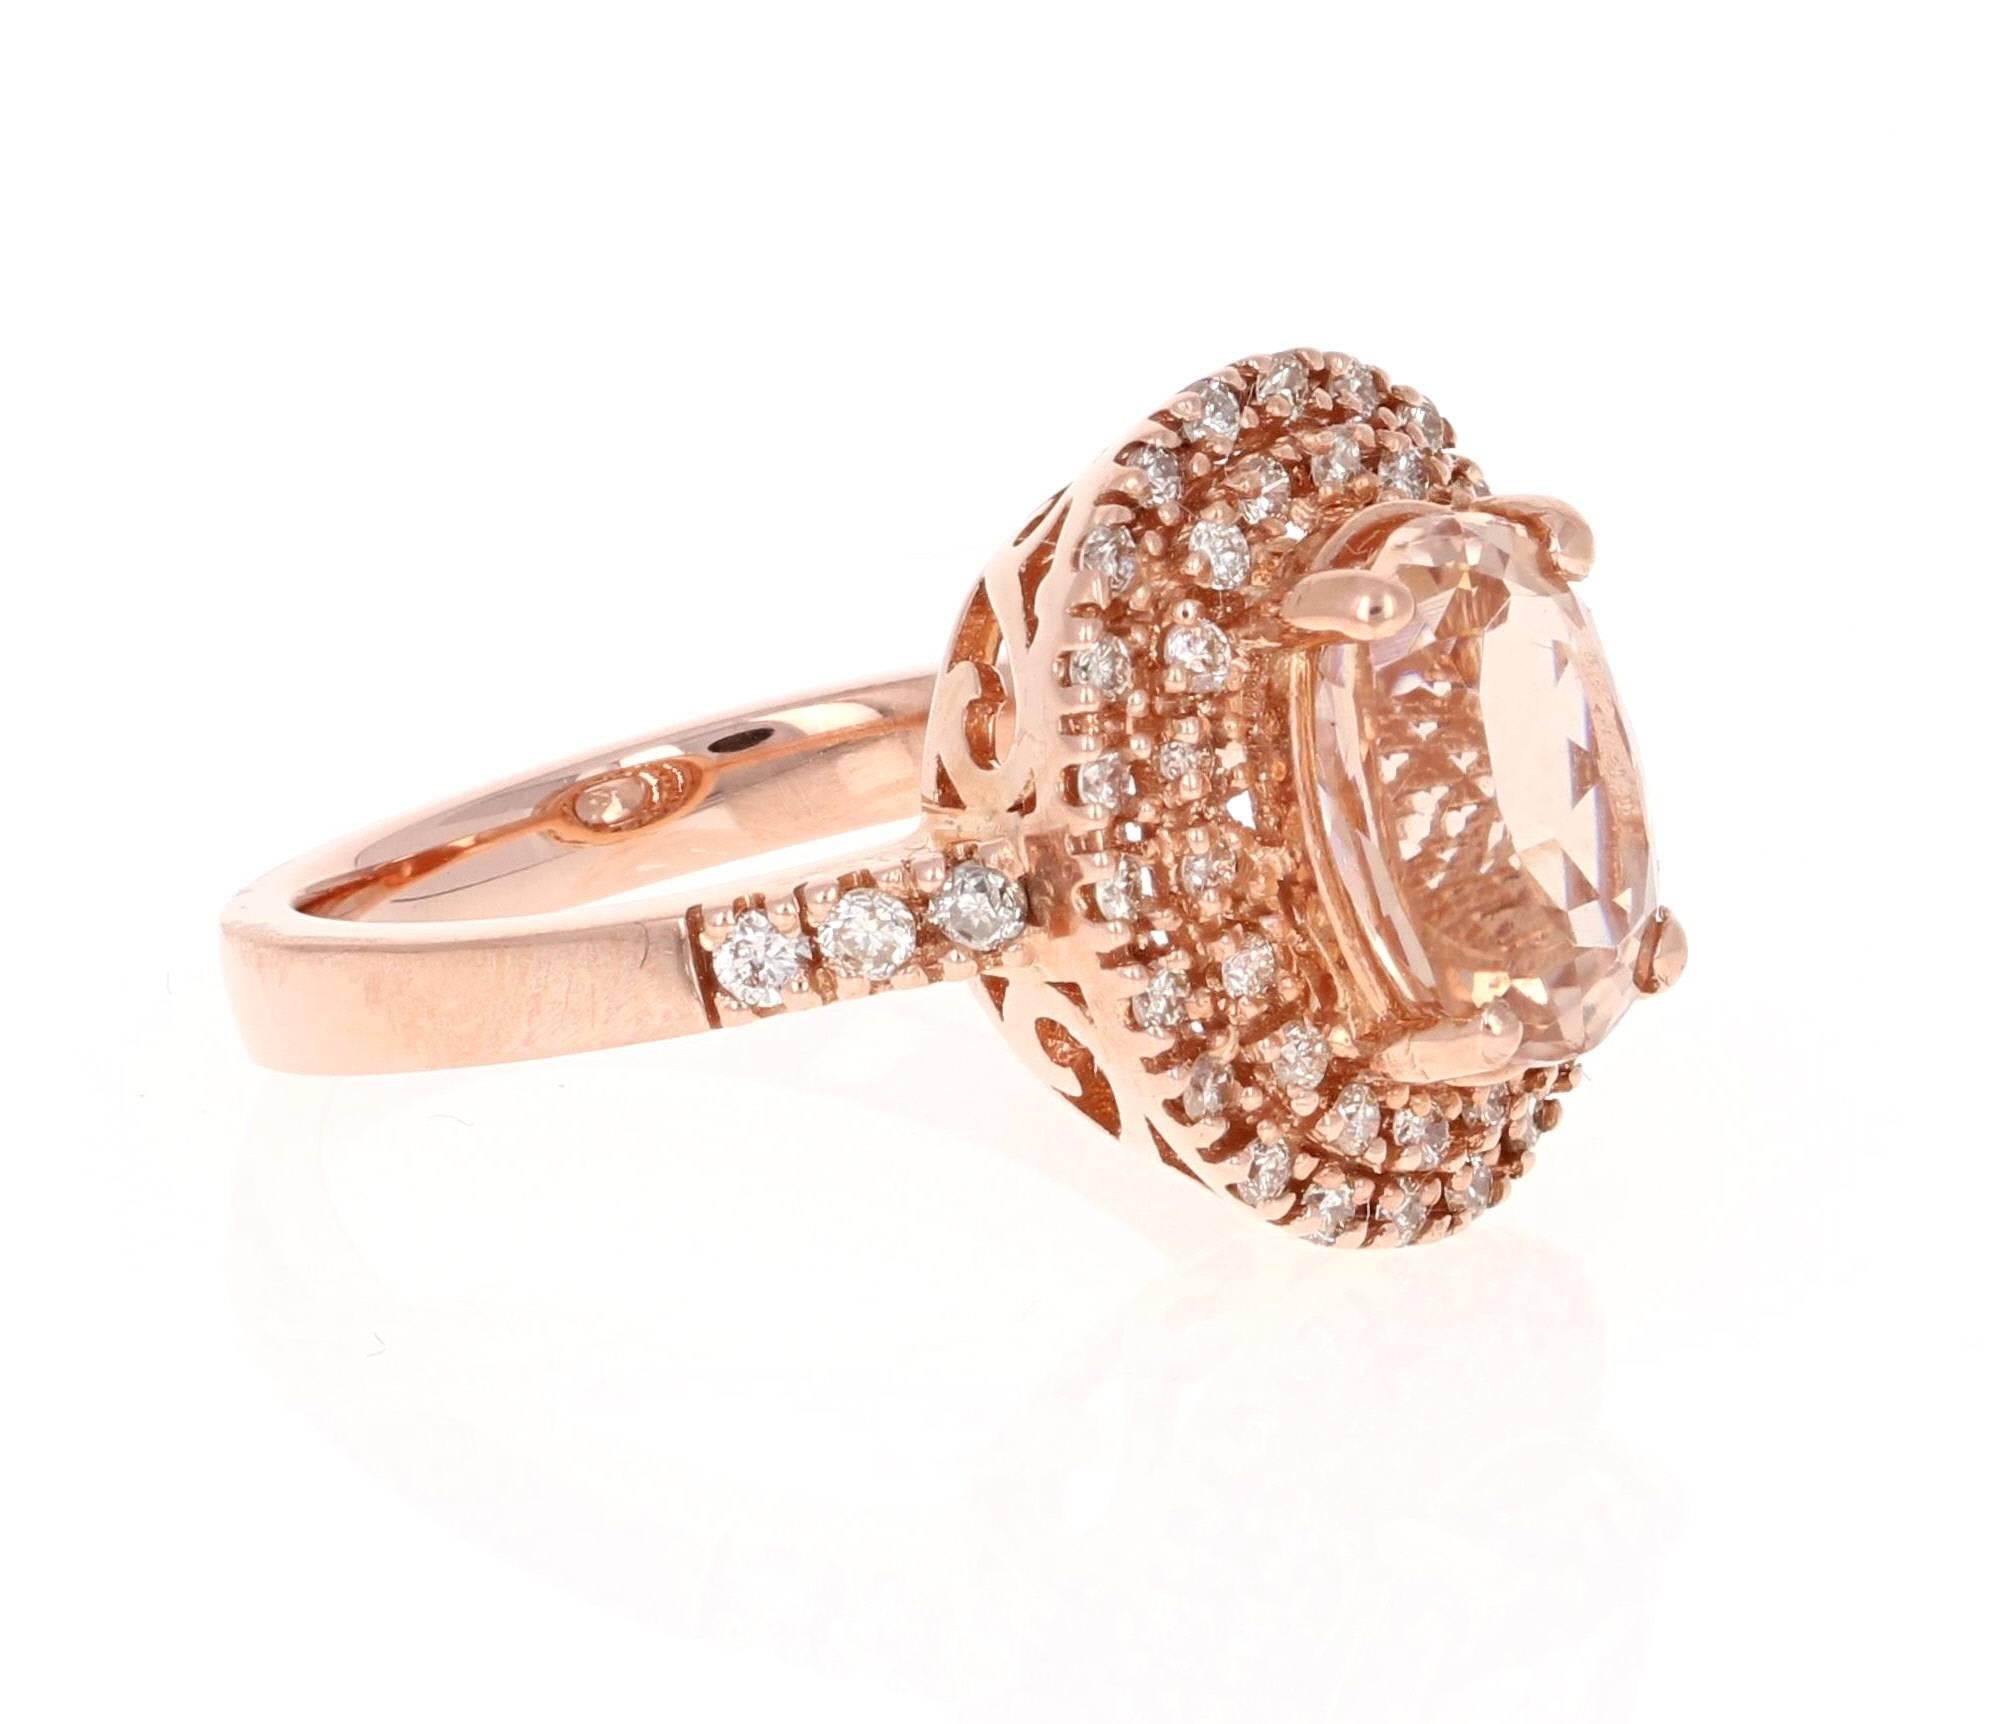 Dieser Ring ist ein 14K Rose Gold Ring, der ein 2,76 Karat Oval Cut Morganite in der Mitte des Rings hat.  Dieser Ring ist umgeben von einem doppelten Halo aus 46 Diamanten im Rundschliff mit einem Gesamtgewicht von 0,52 Karat.  Das